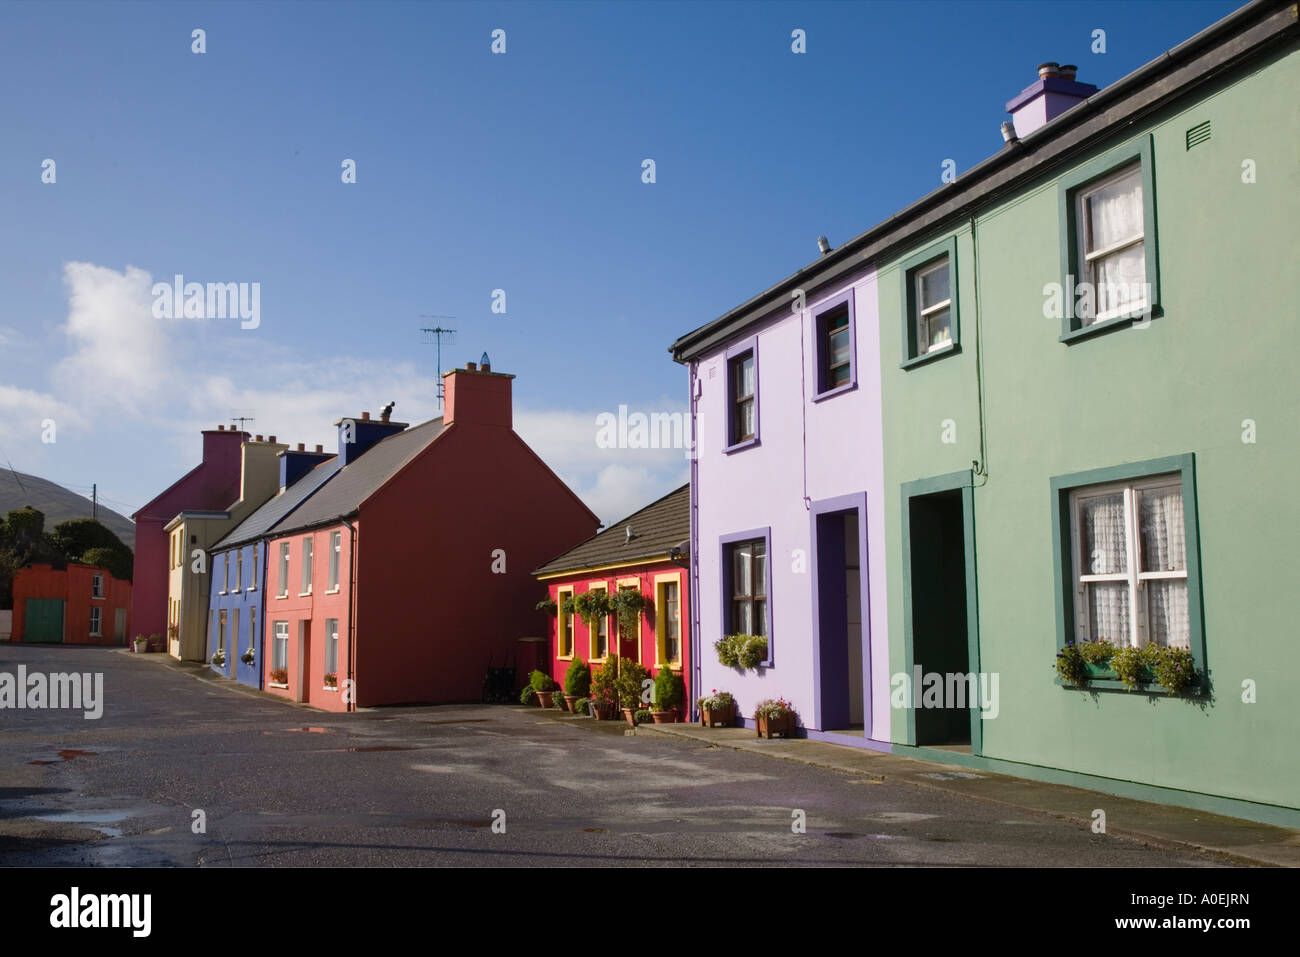 Rangée de maisons colorées dans la rue principale du village historique sur l'anneau de Beara, route touristique. Co Cork Irlande Irlande Eyeries Banque D'Images